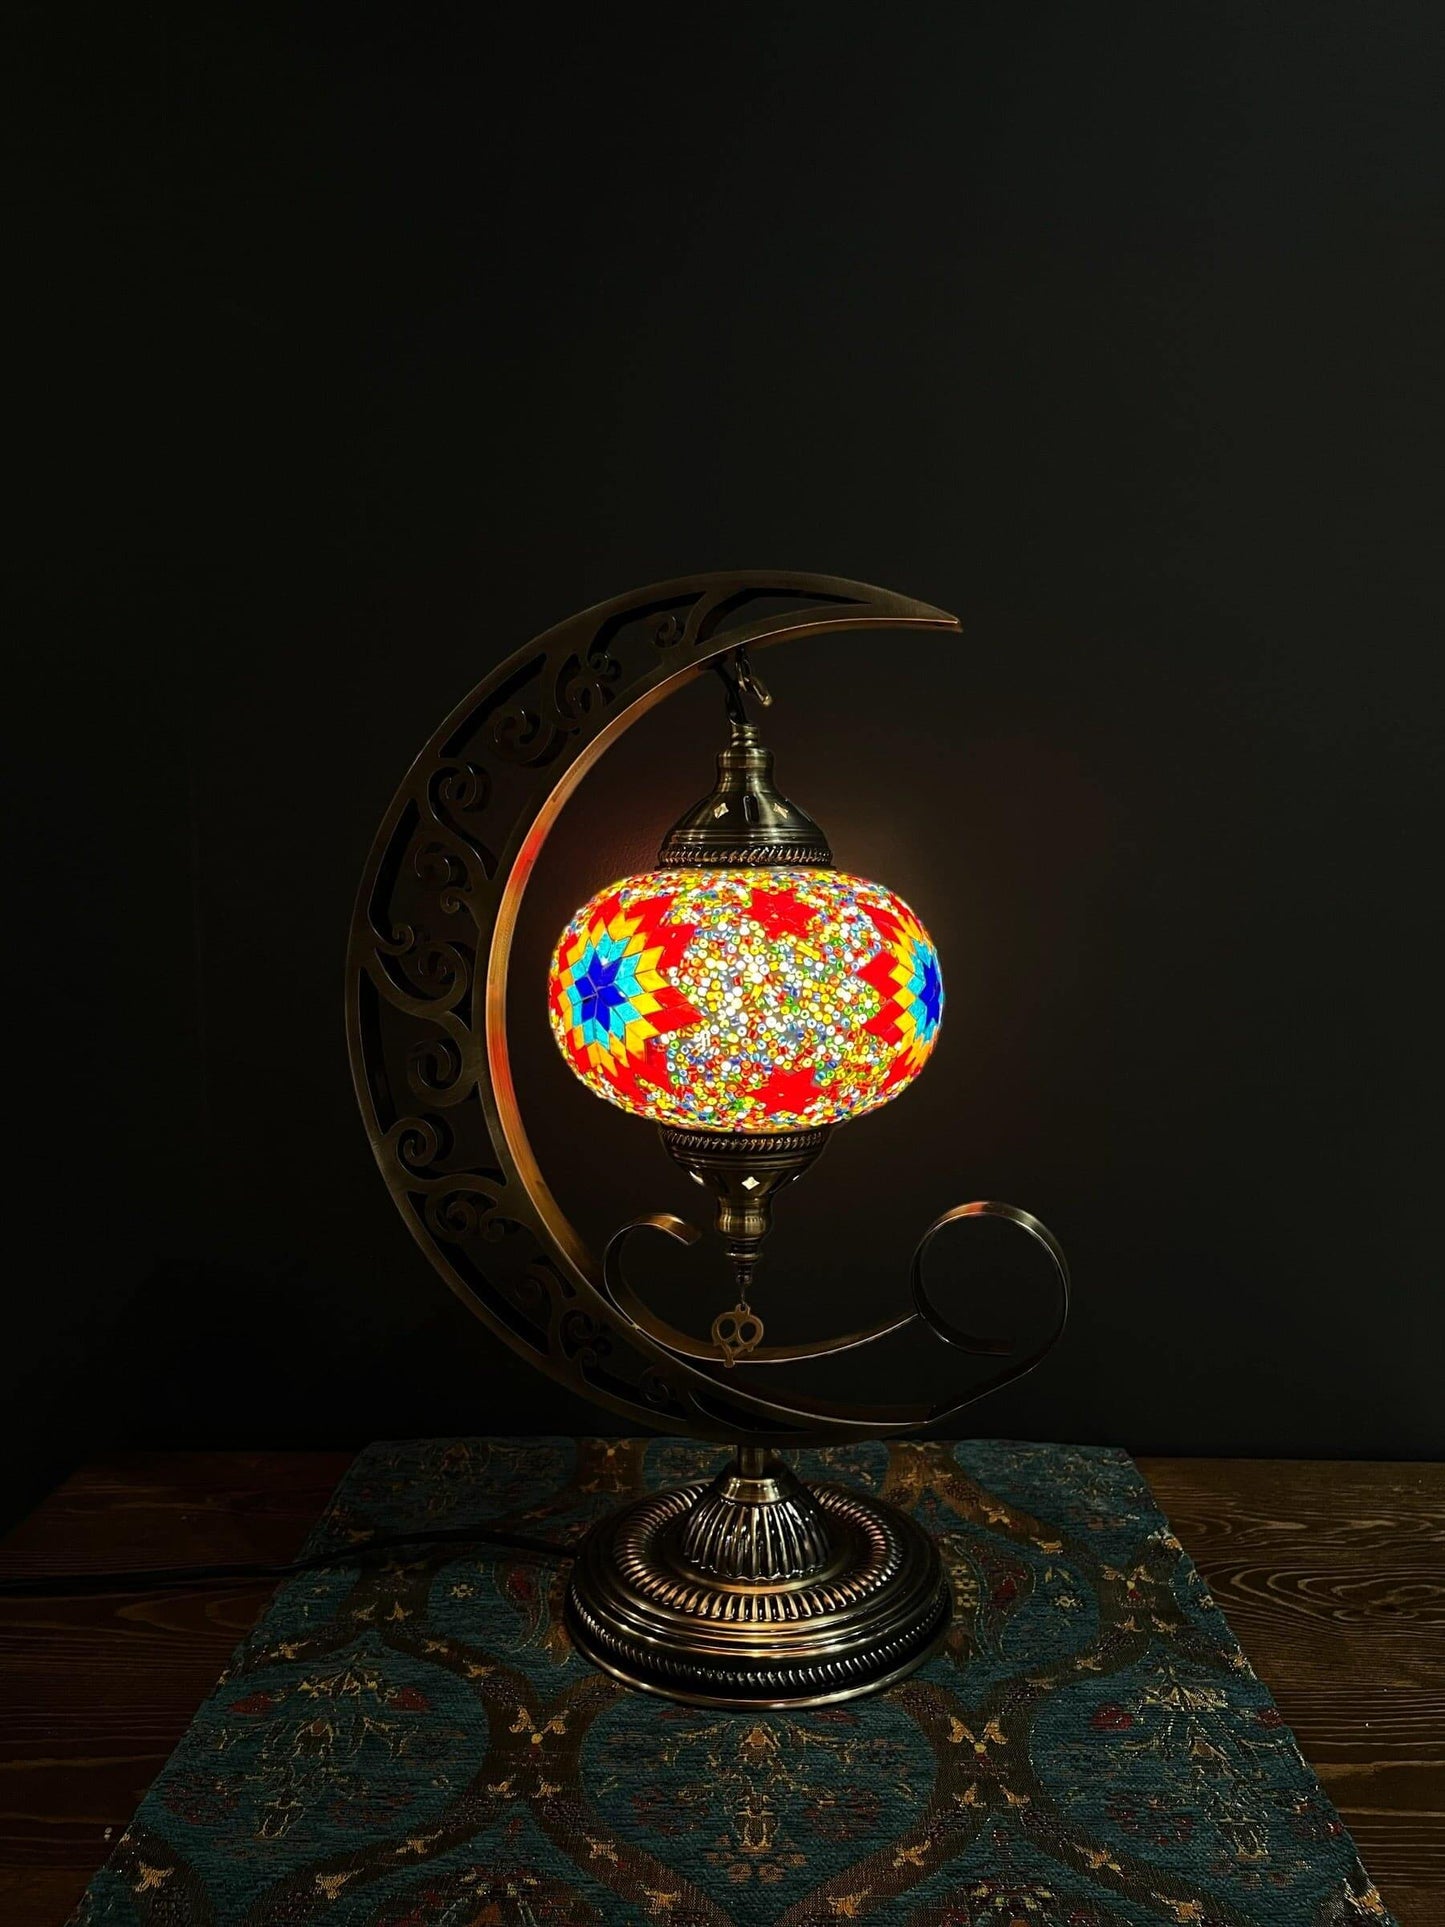 Mosaic Moon Lamp (Turkish Lamps) Palace